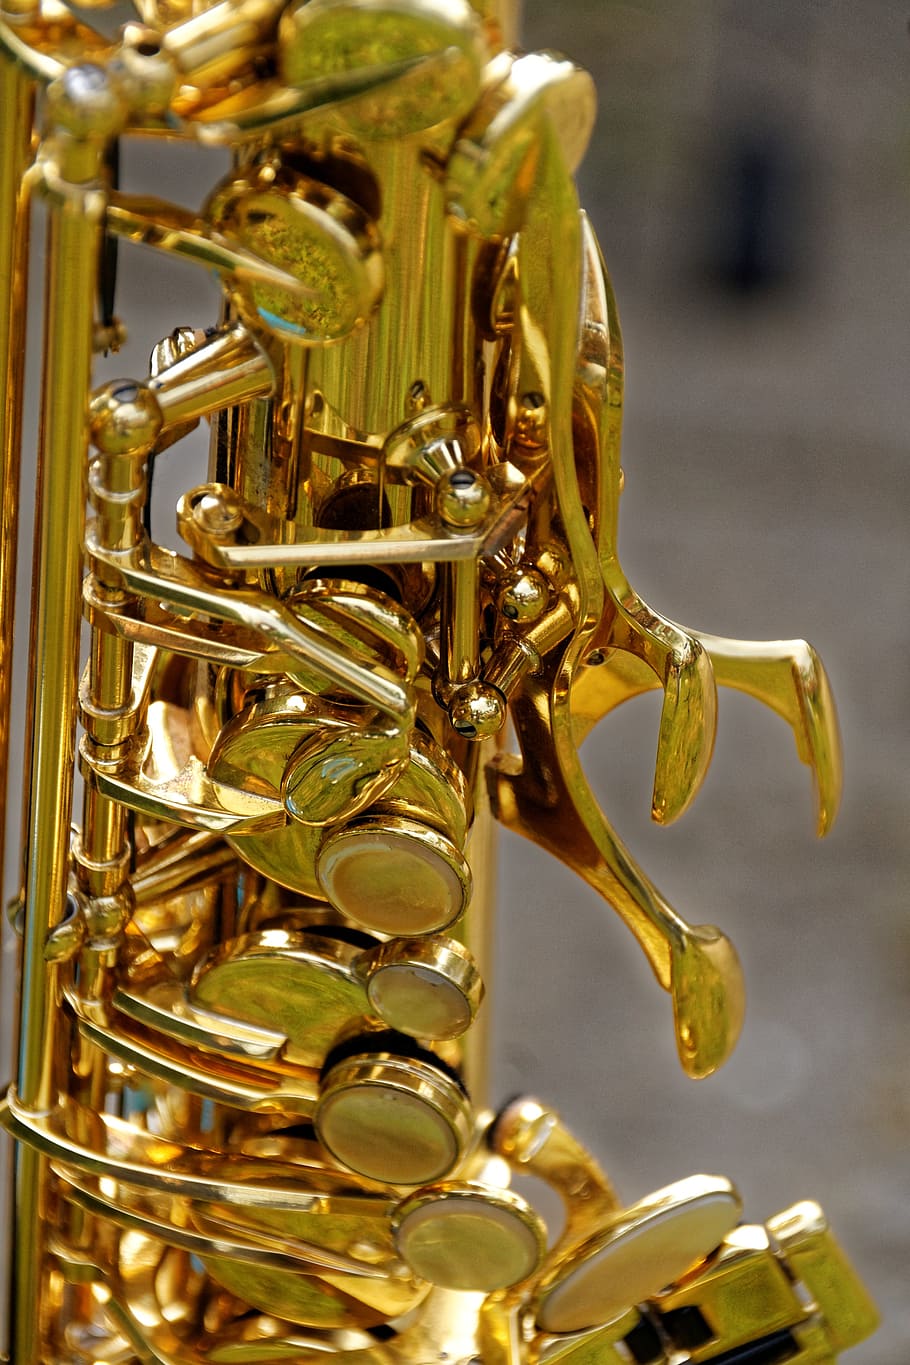 instrumento, saxofón, detalle de saxofón, de cerca, analógico, banda, música, cerrar, música de jazz, latón